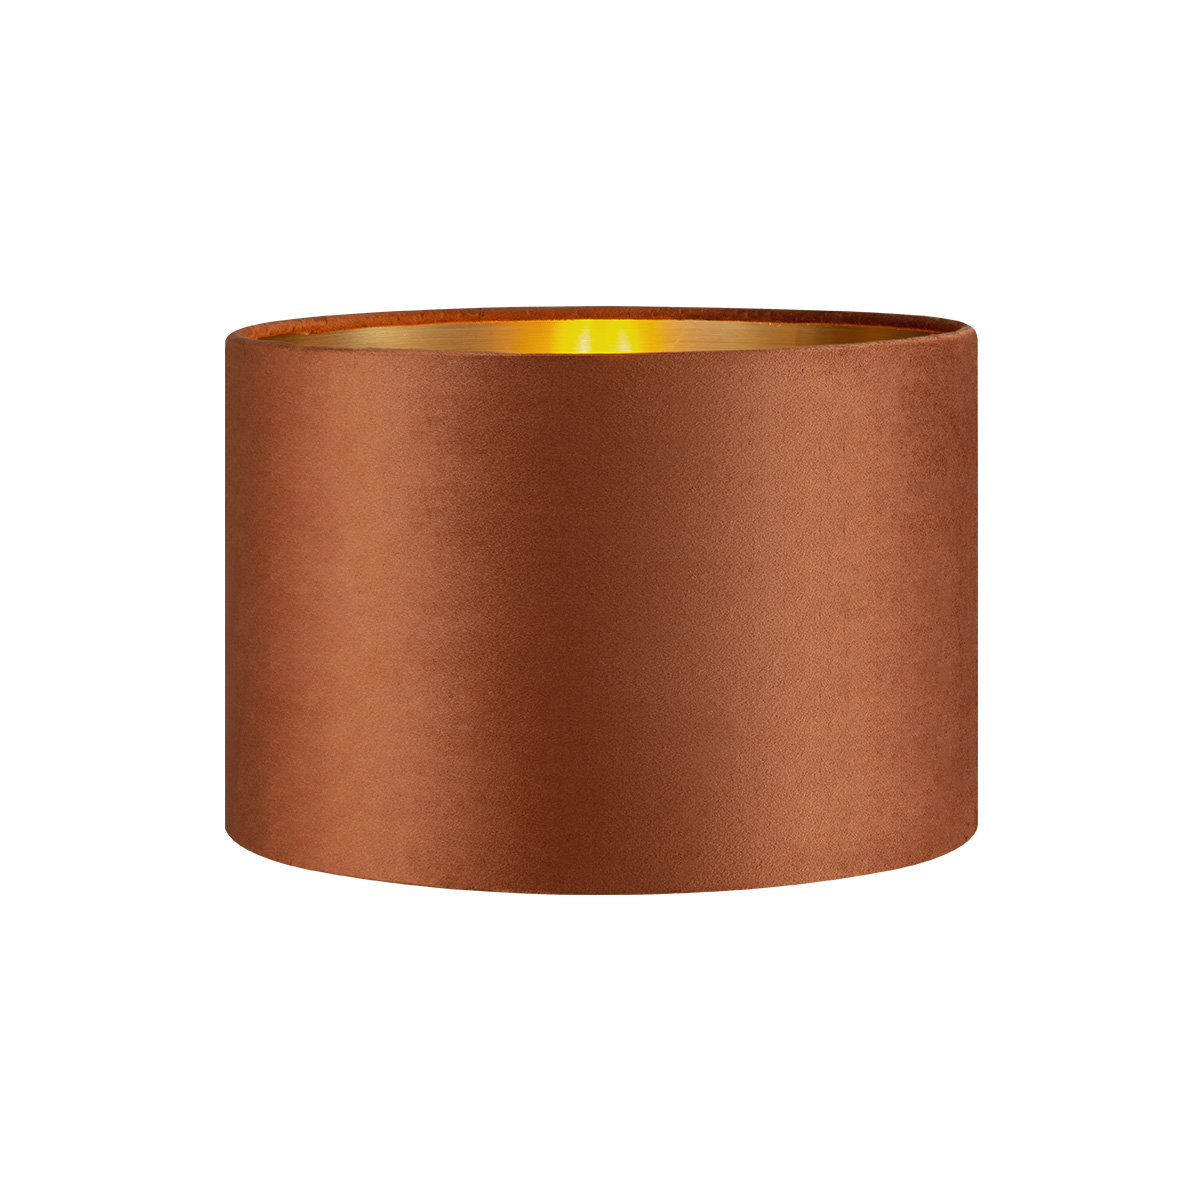 Tangla lighting - TLS7564-30BN - Lampshade - velvet - brown - diameter 30cm - E27